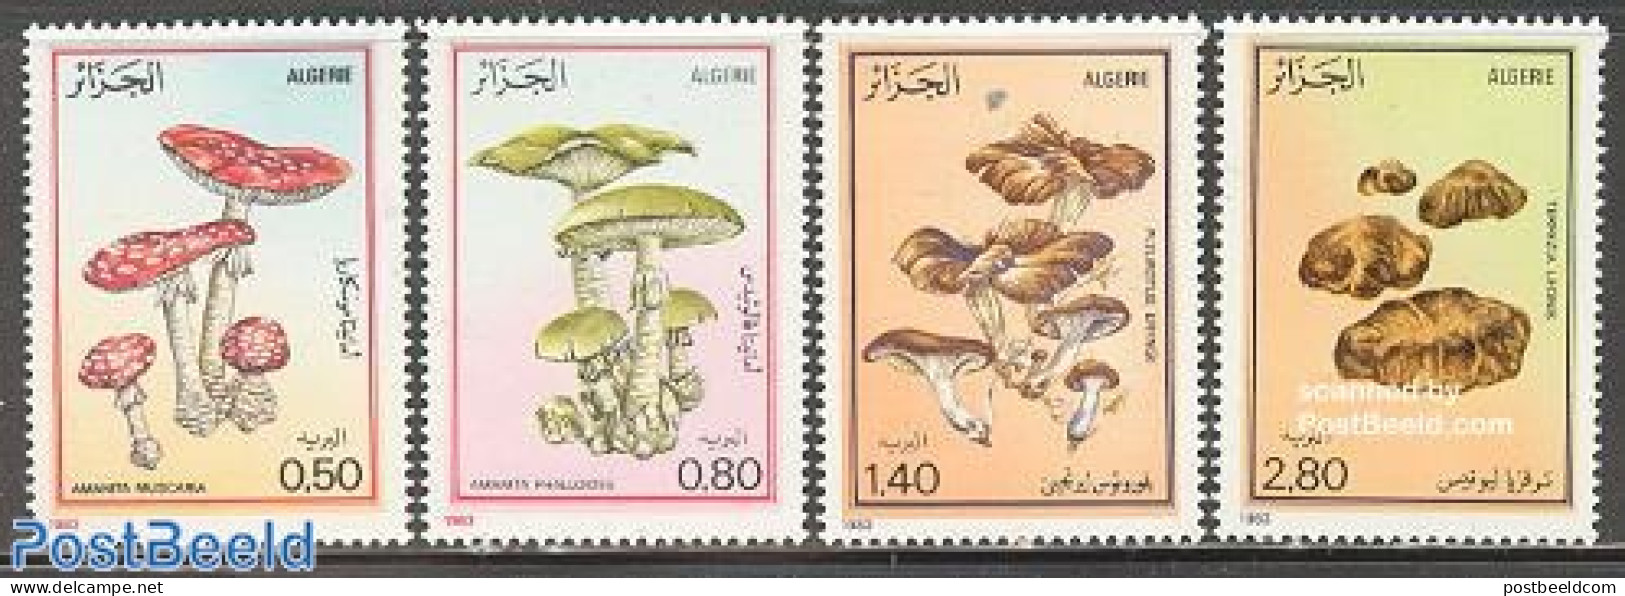 Algeria 1983 Mushrooms 4v, Mint NH, Nature - Mushrooms - Ungebraucht